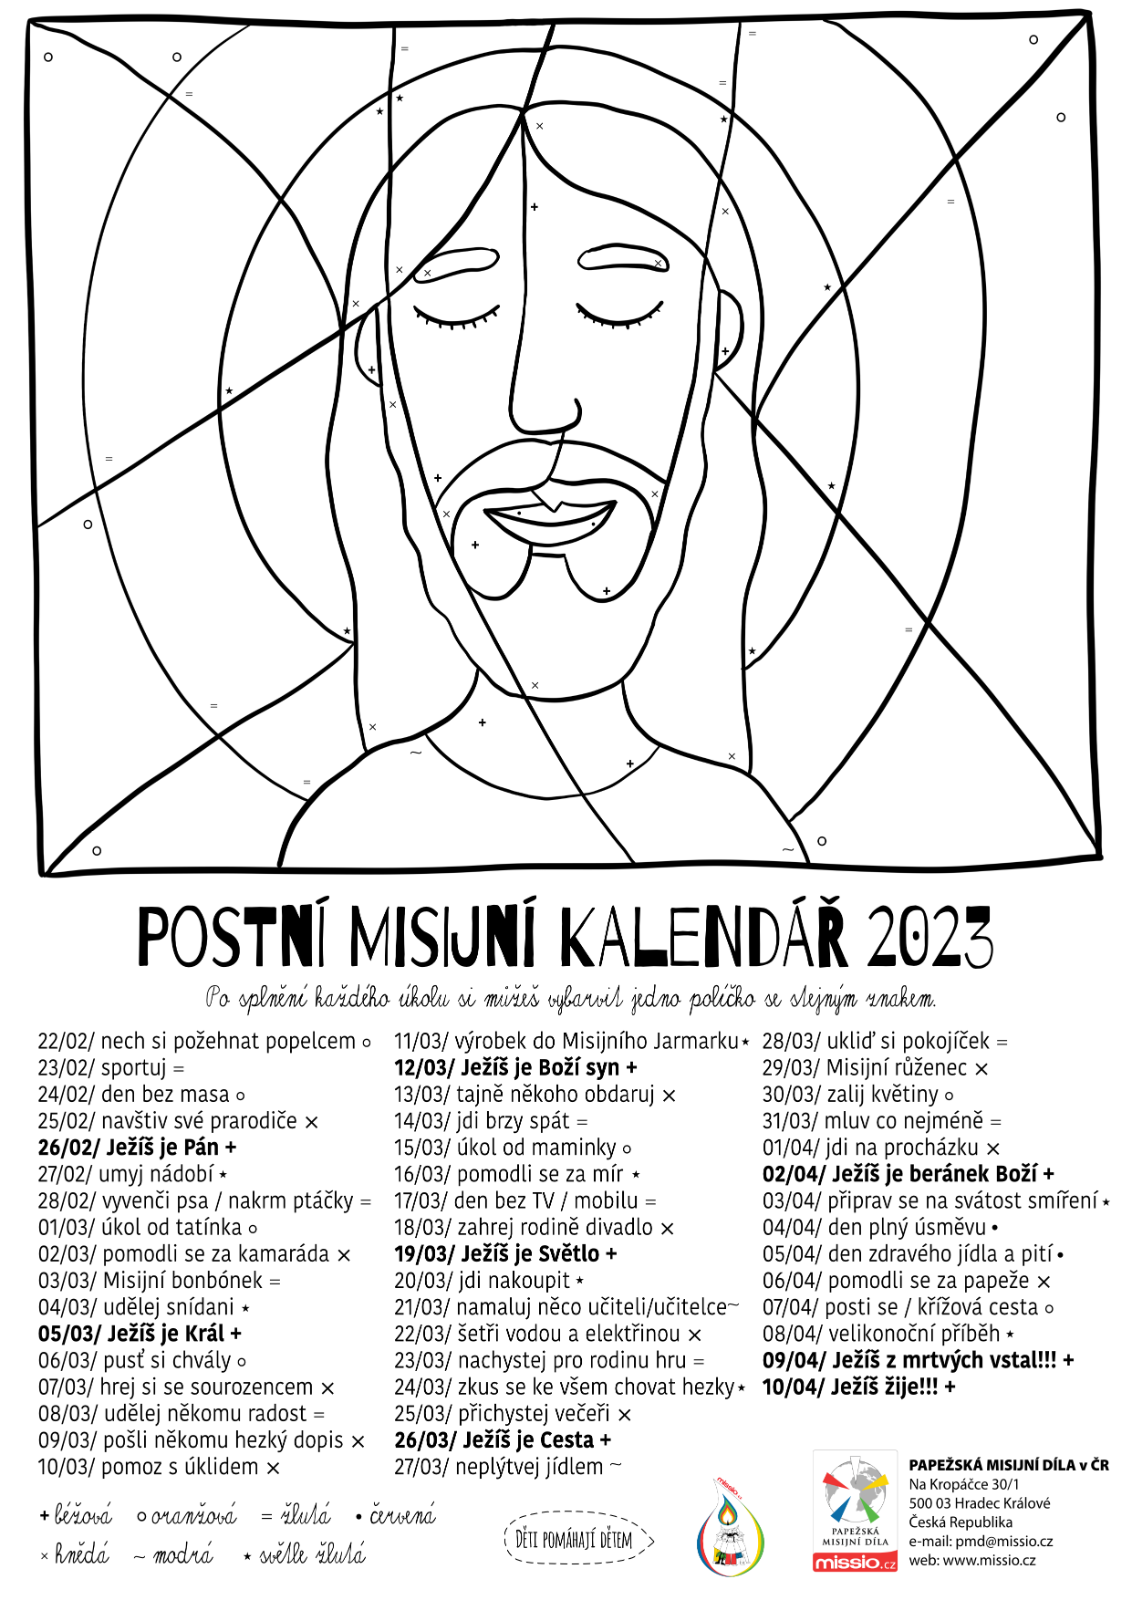 Postni misijni kalendar 2023 cb